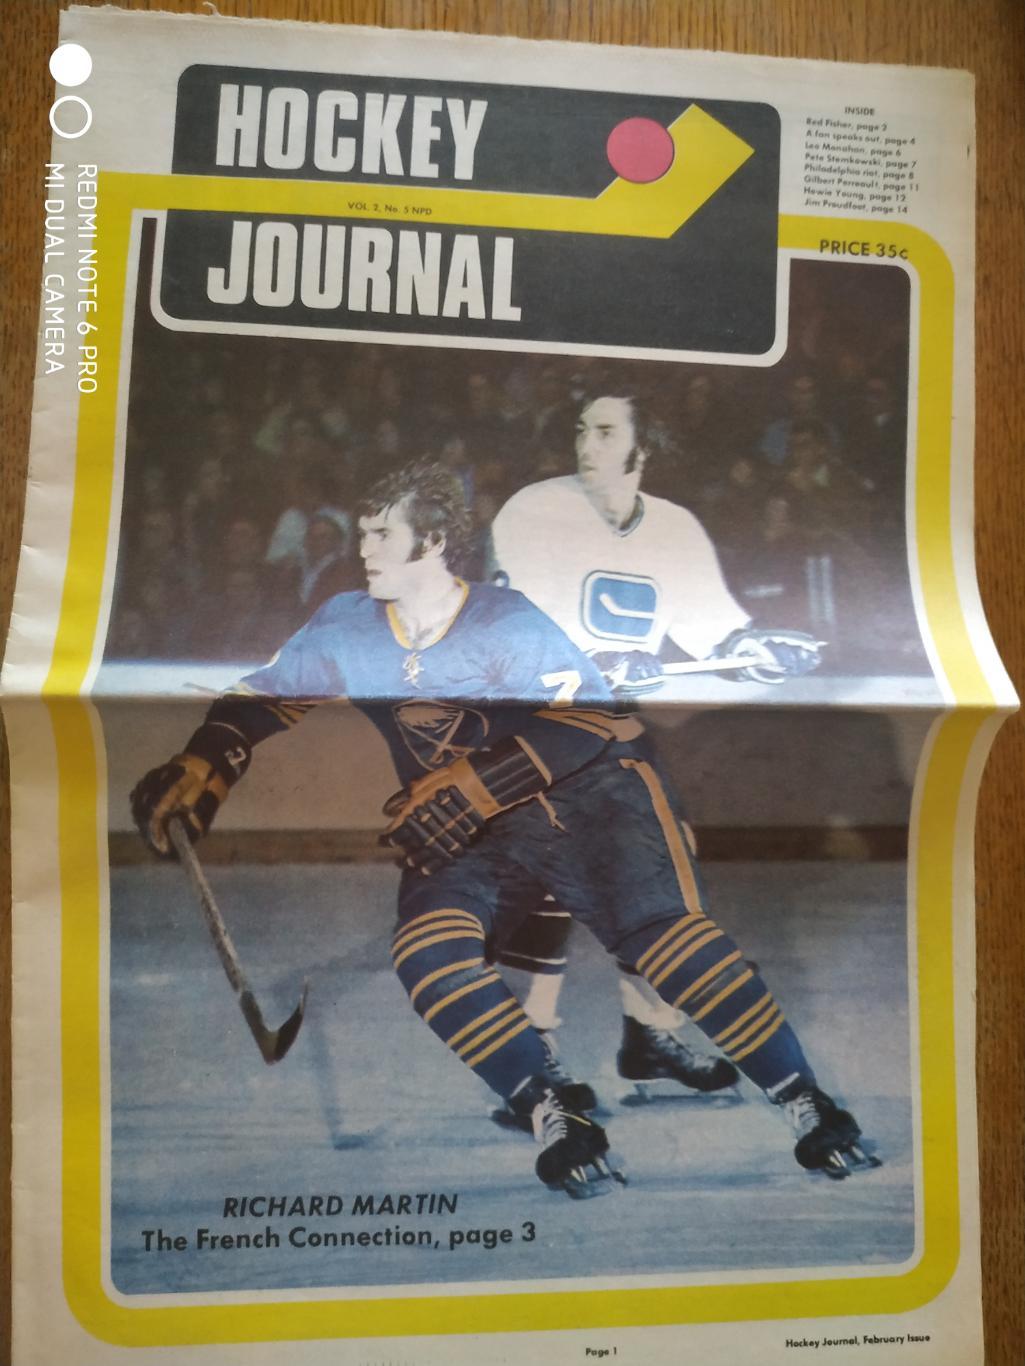 ХОККЕЙ ГАЗЕТА НХЛ NHL 1972 HOCKEY JOURNAL VOL.2 №5